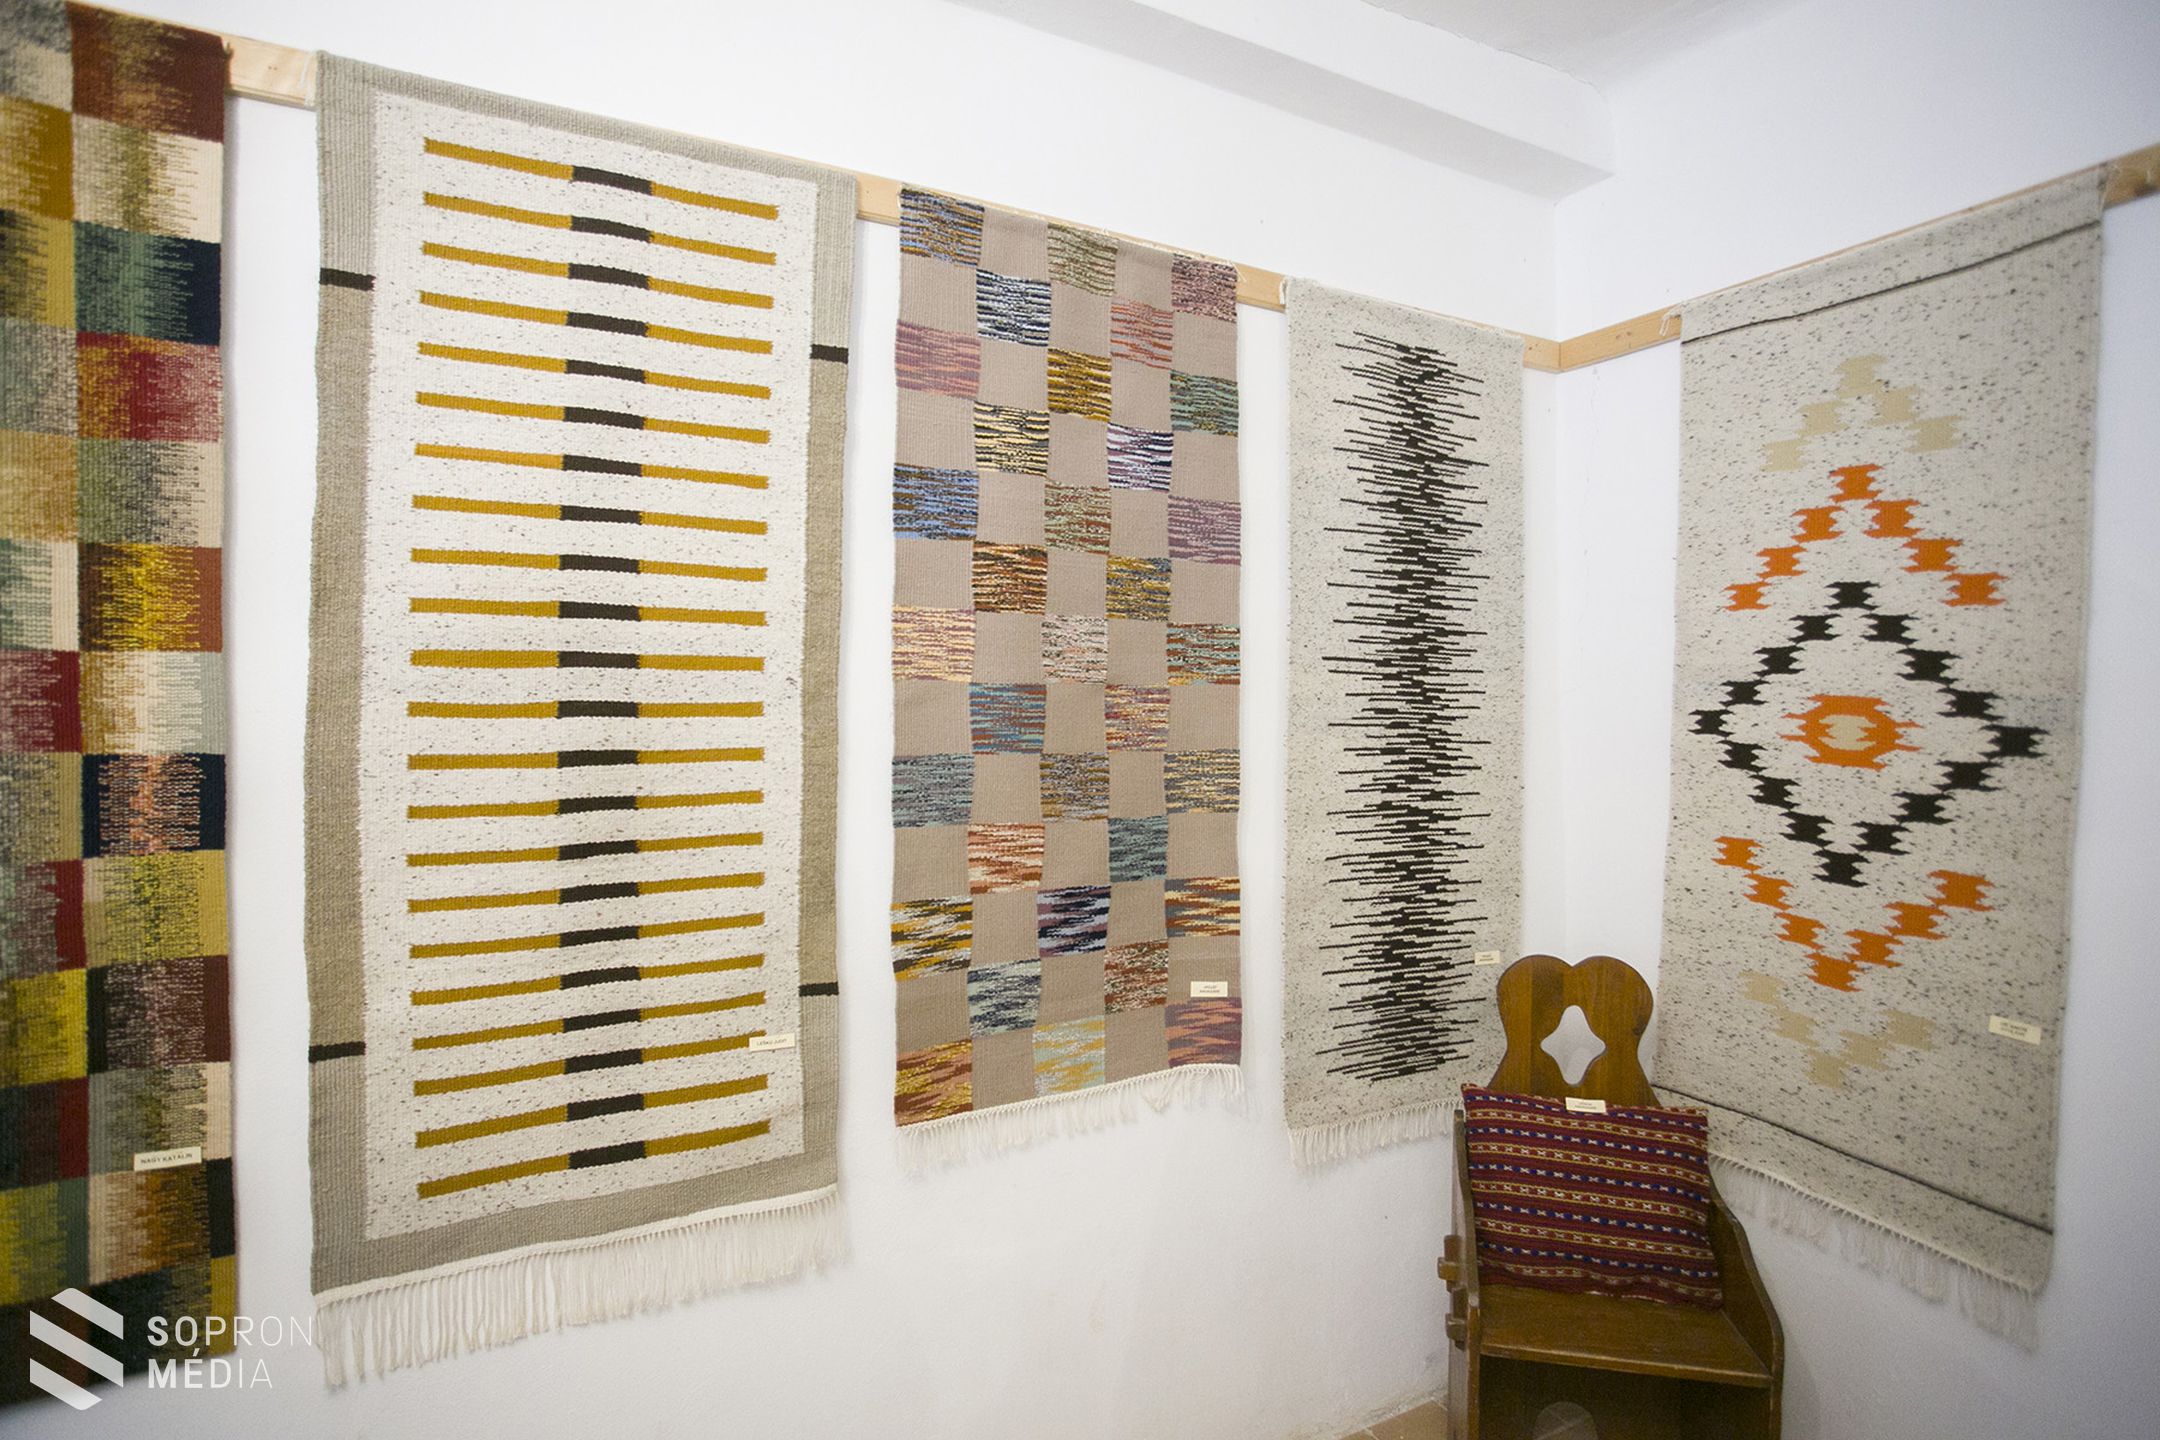 Soproni gyapjúszövők kiállítása Nagycenken